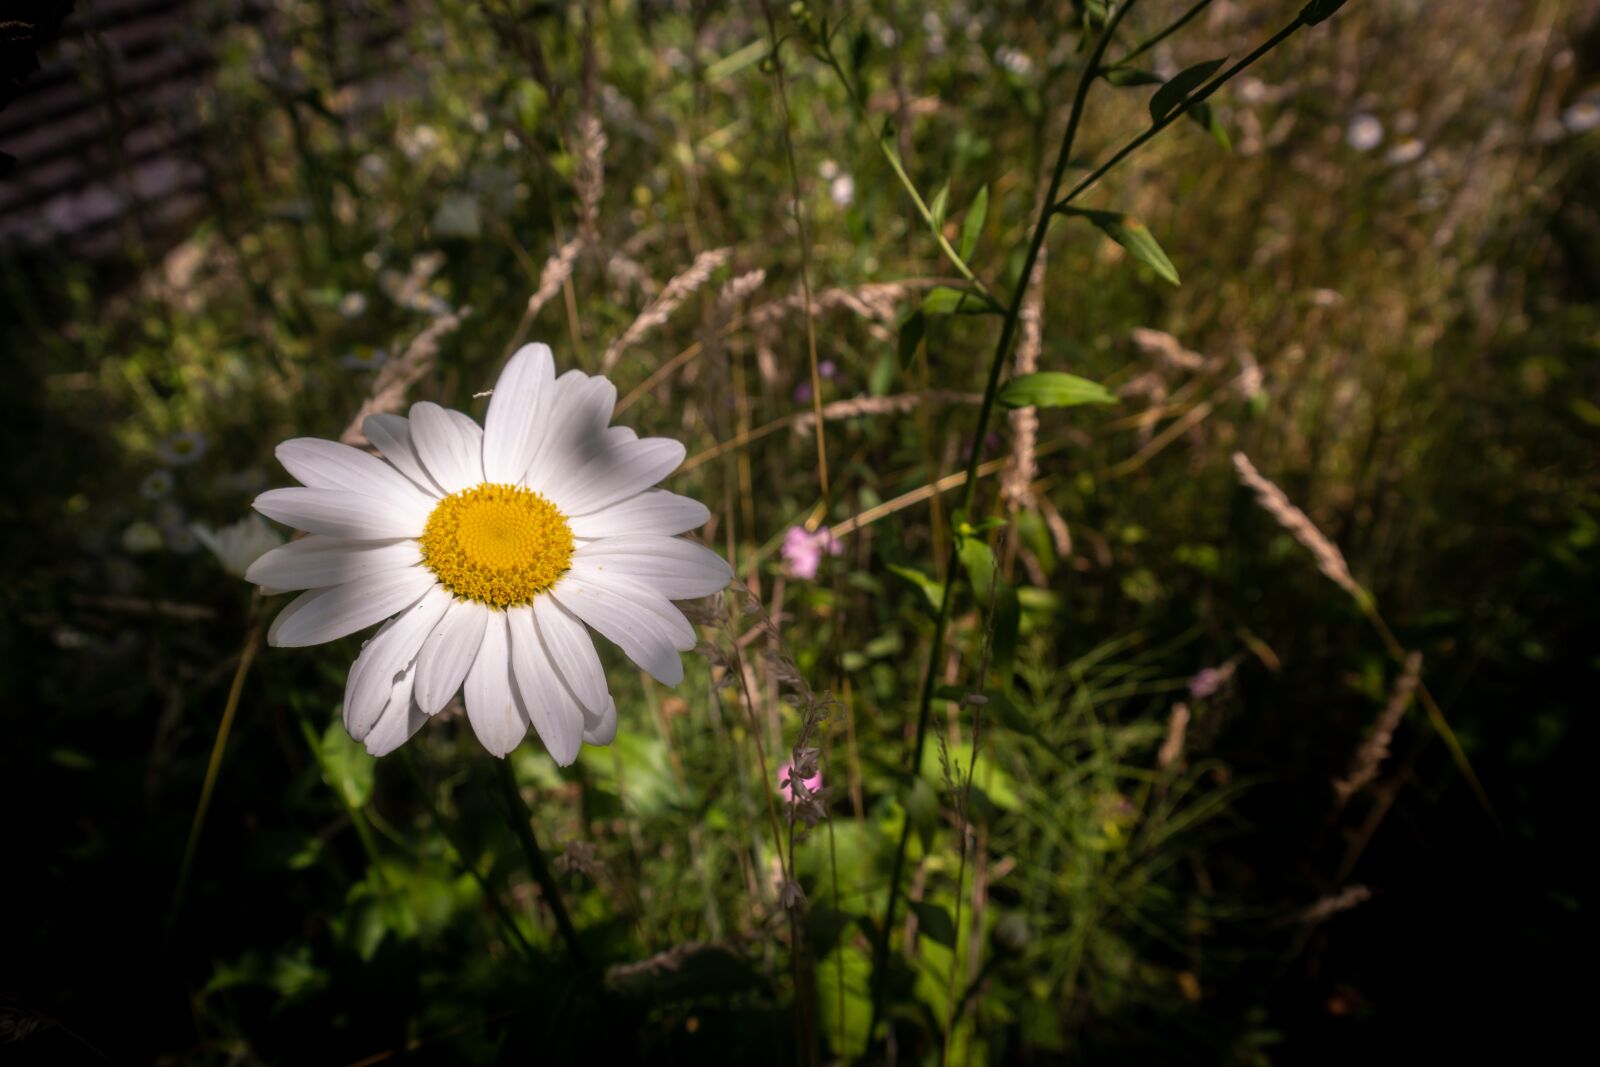 Samsung NX300 sample photo. Flower, daisy, summer photography